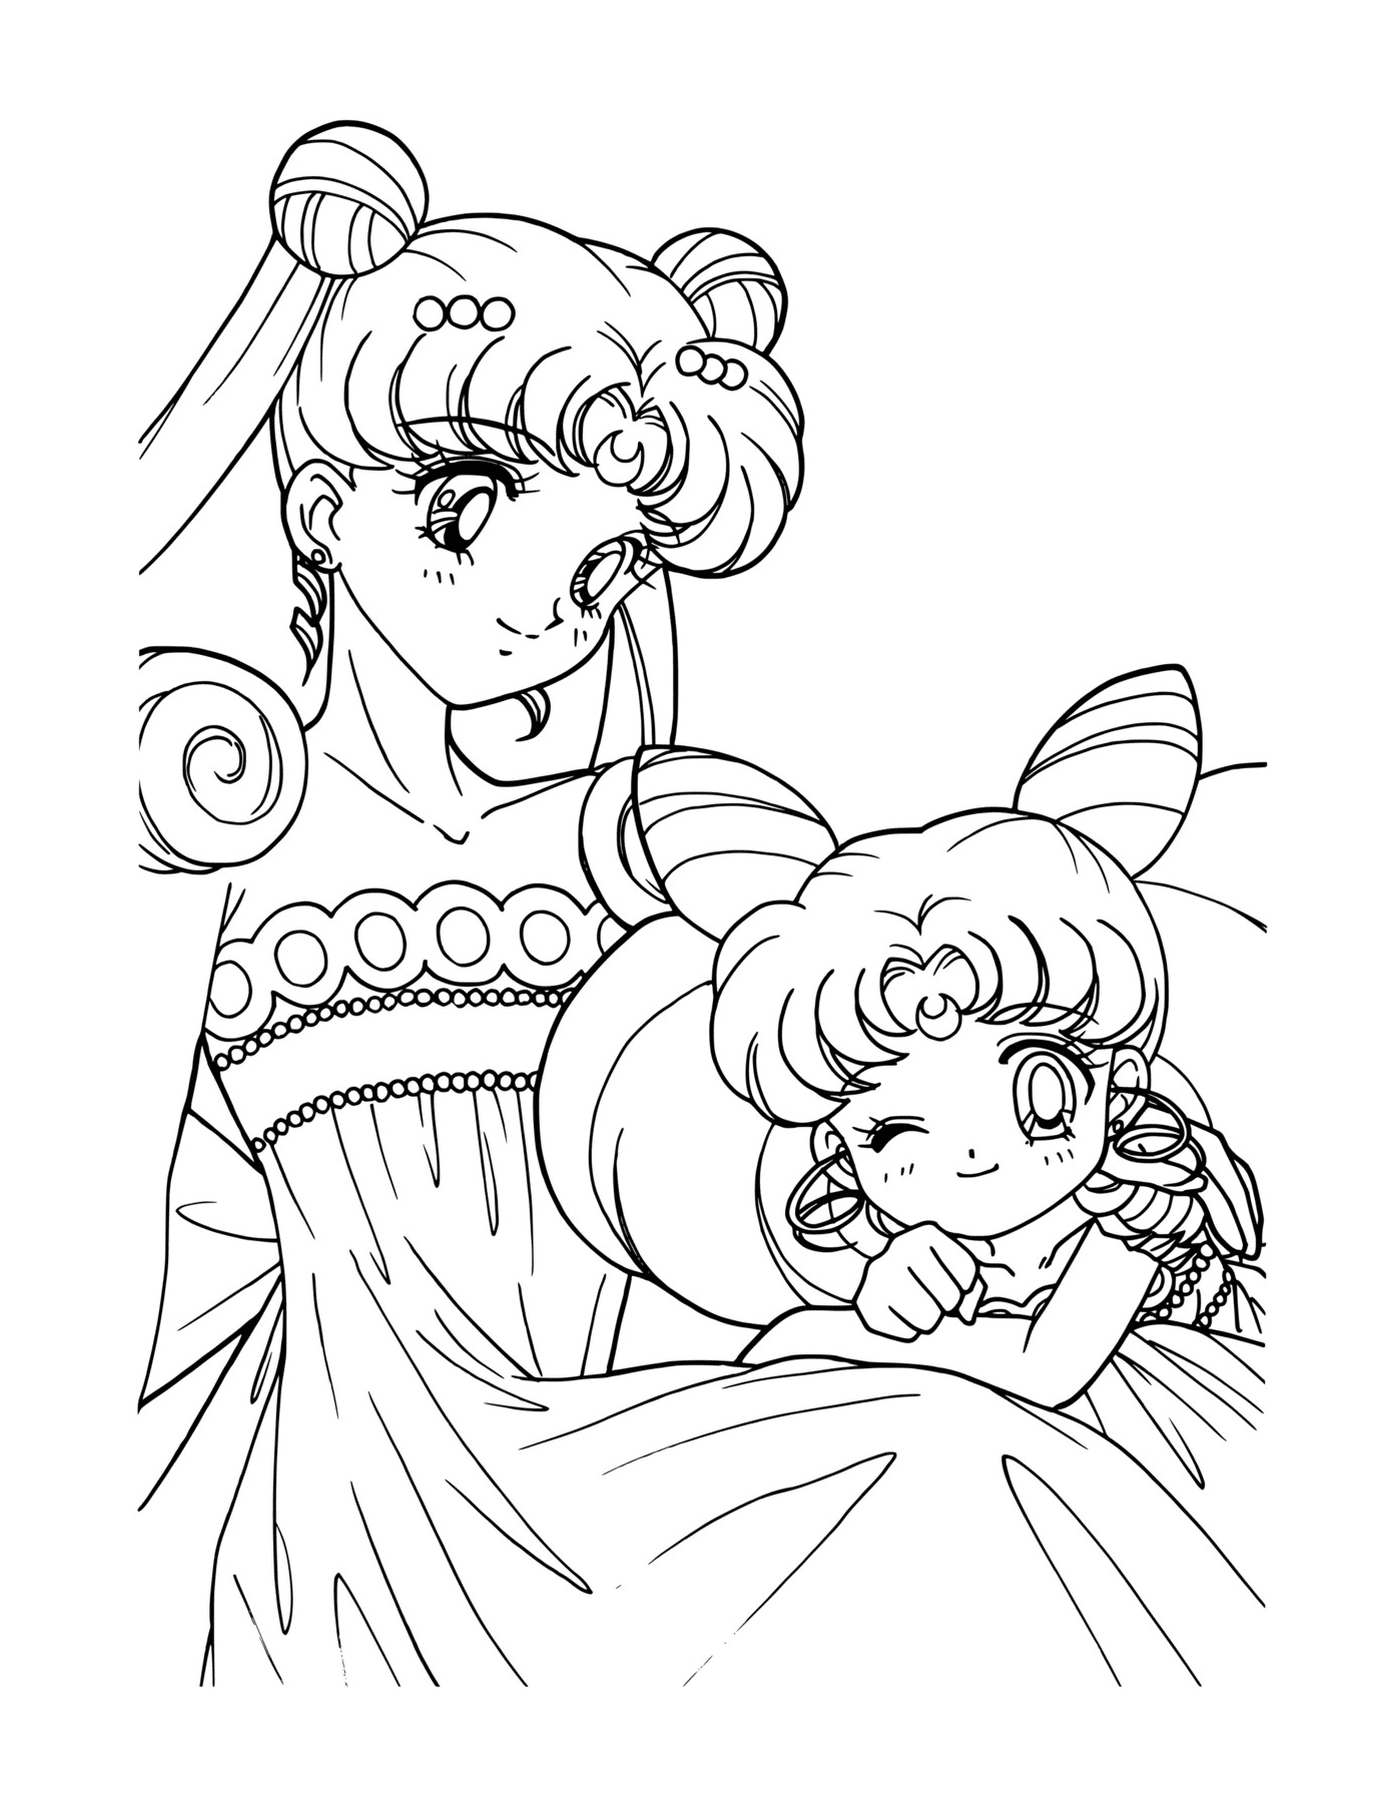  Sailor Moon und seine Babyprinzessin 